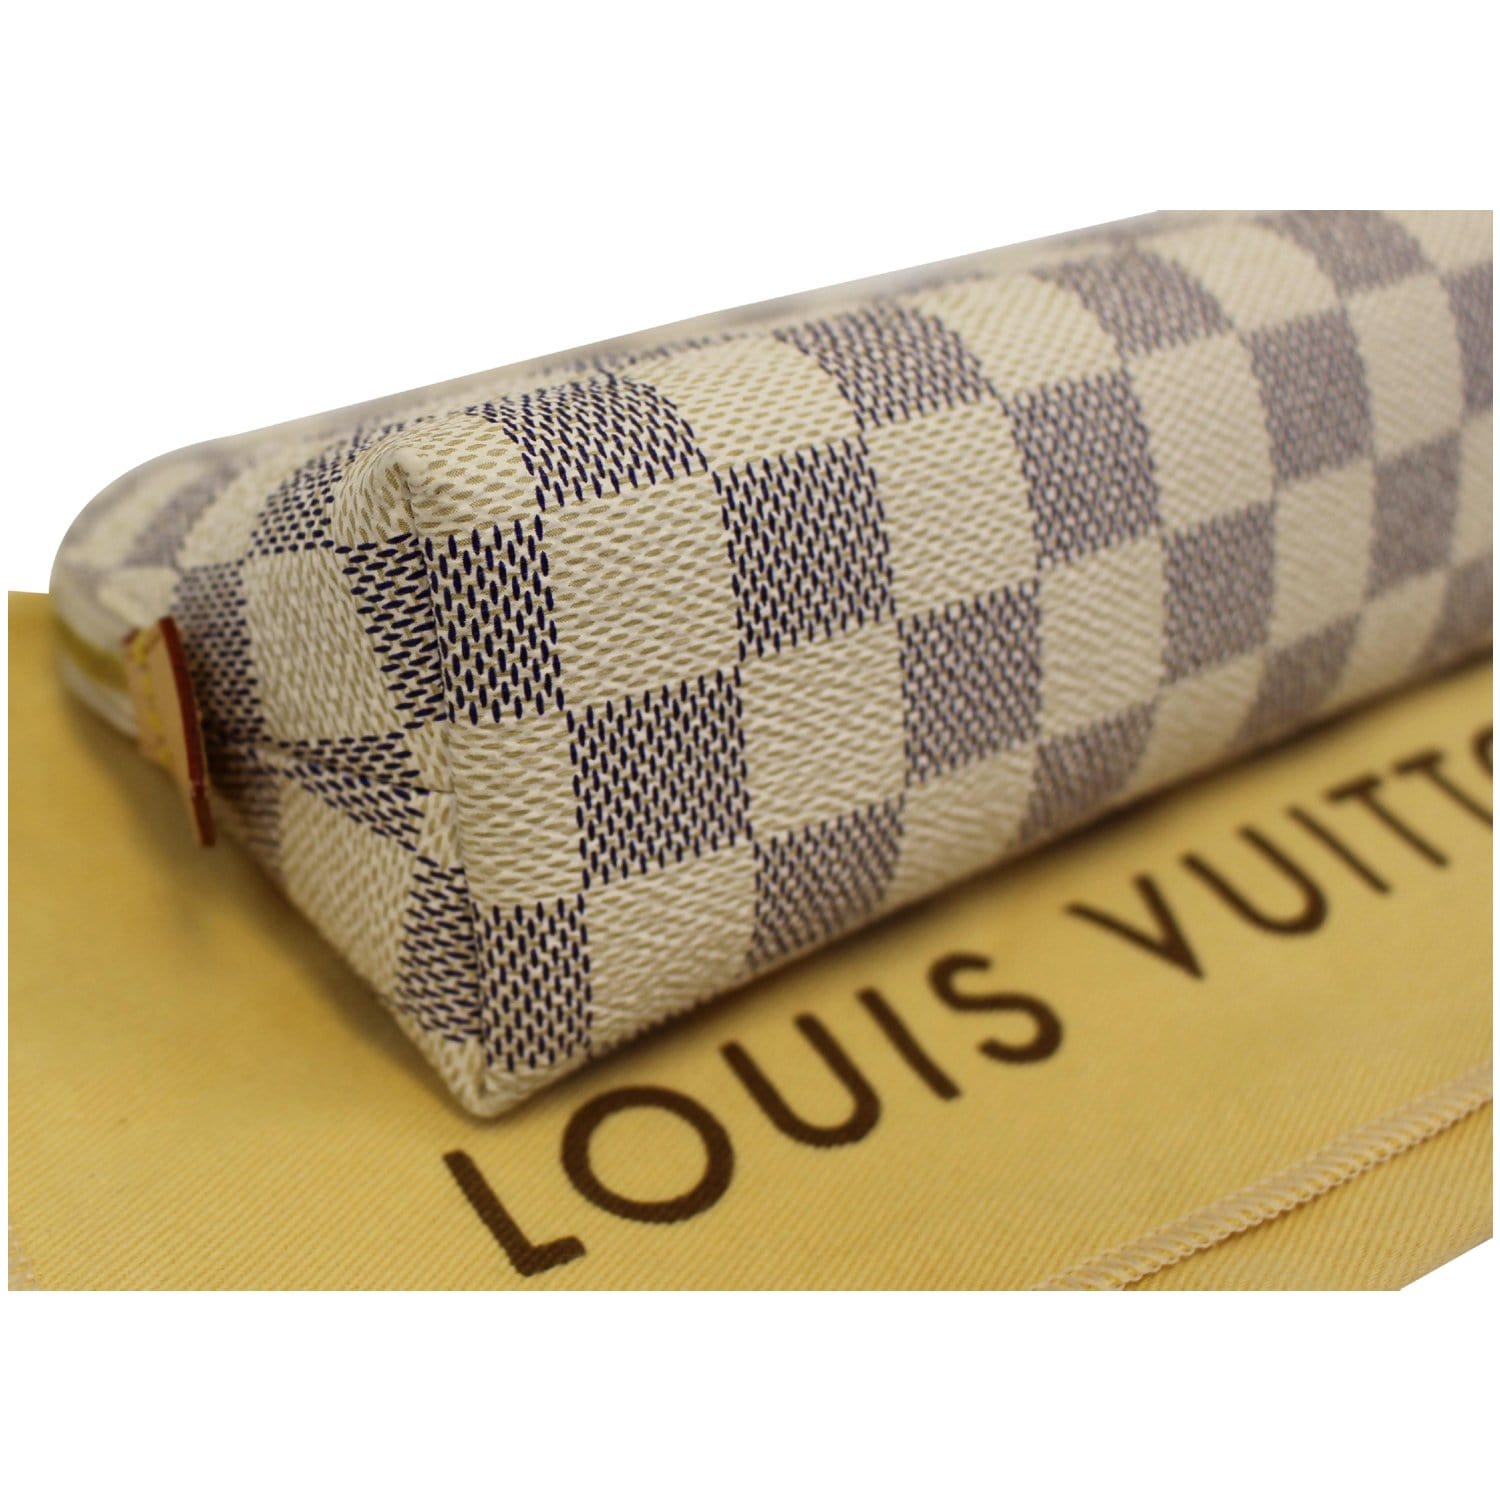 Louis Vuitton Damier Azur Cosmetic Pouch 